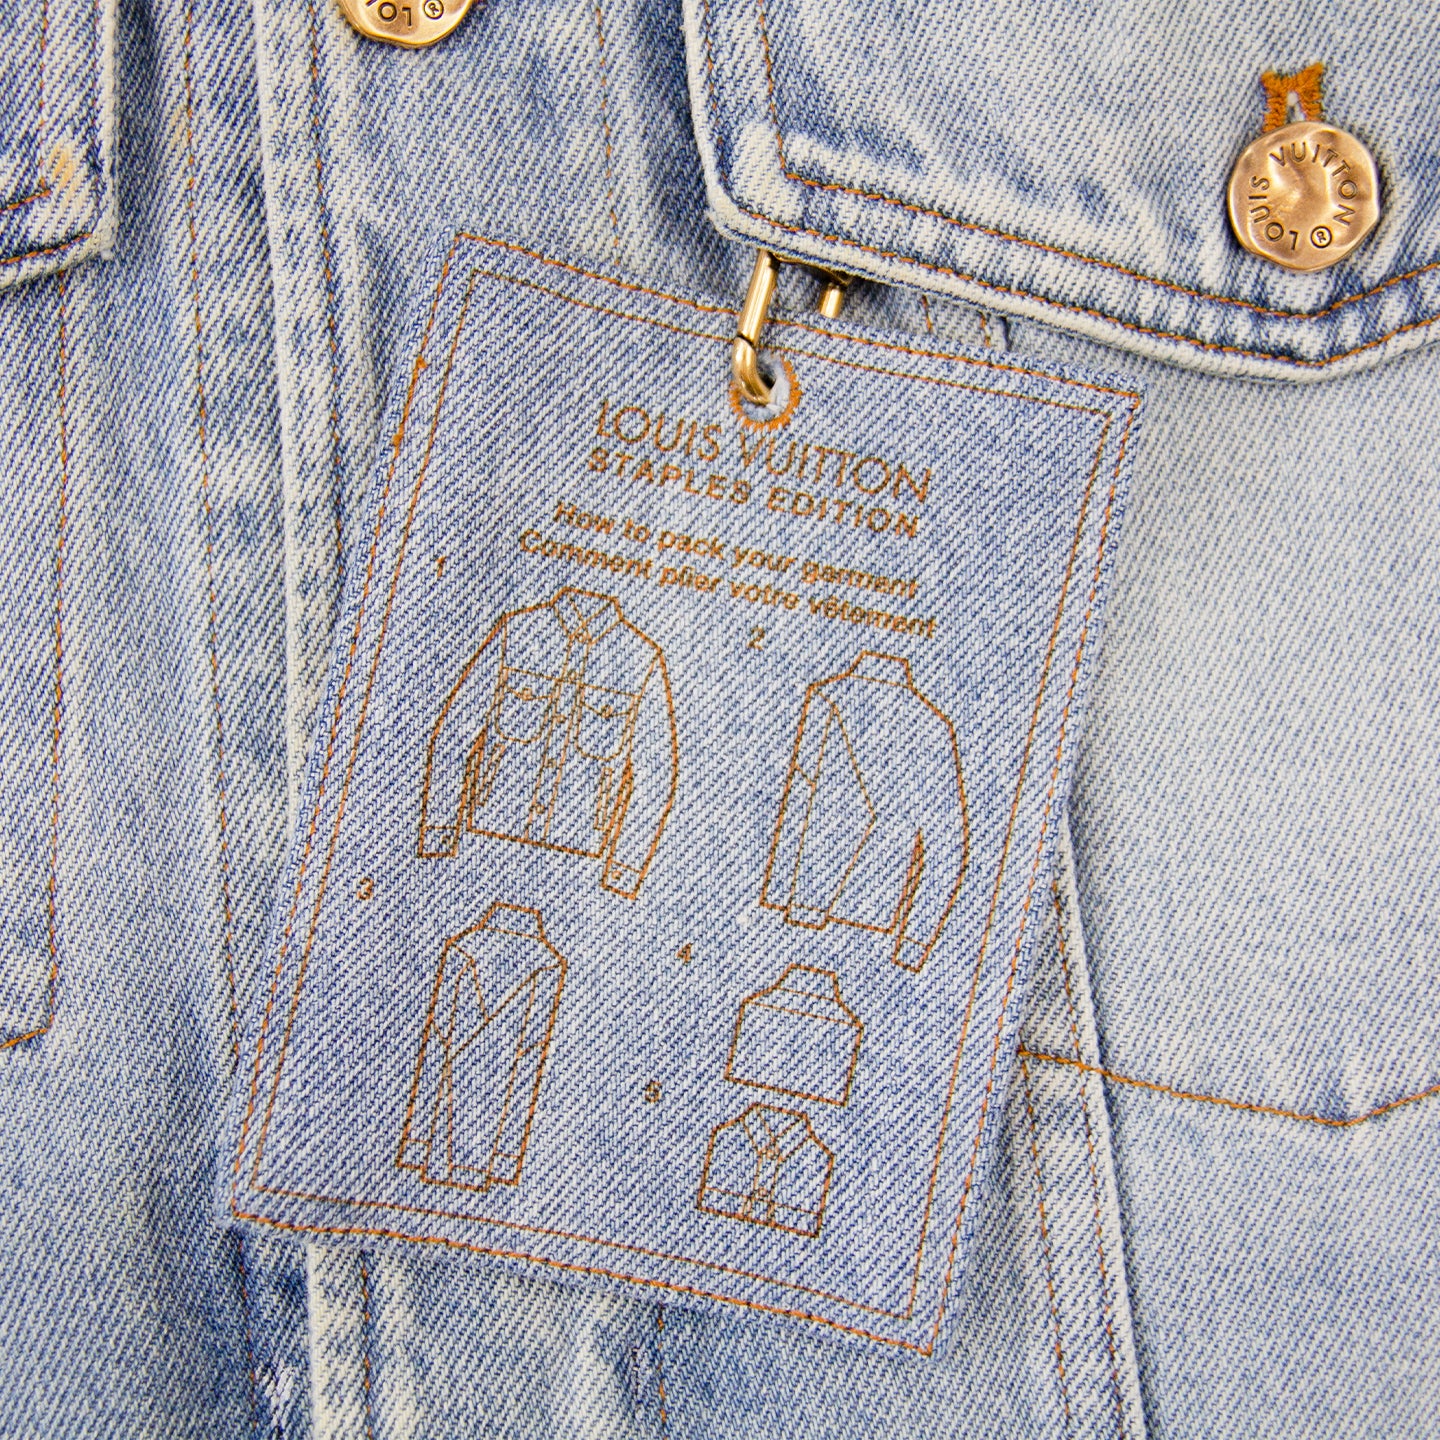 Louis Vuitton DNA Denim Jacket, Blue, 56